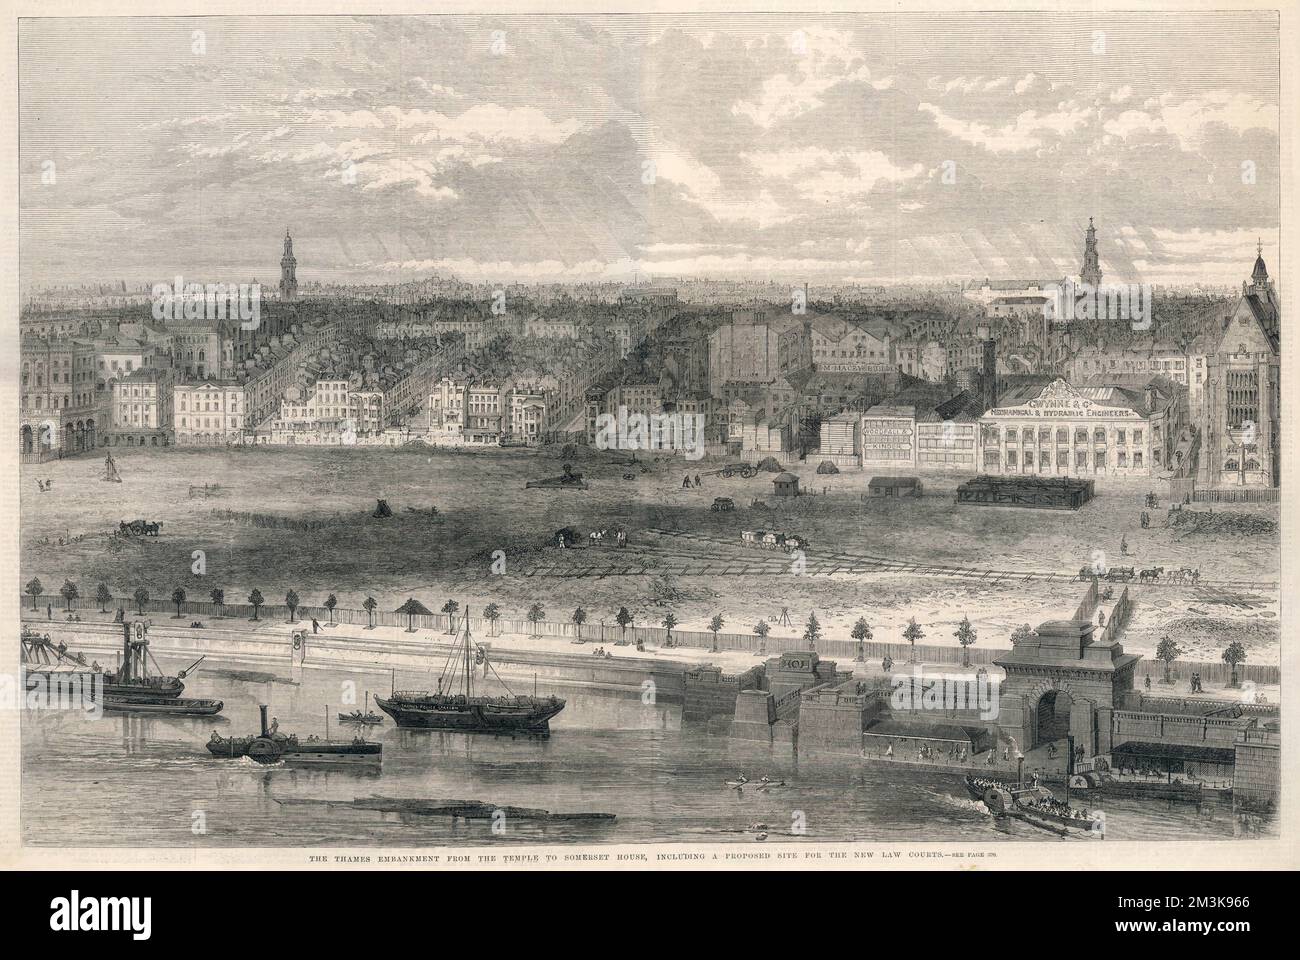 Blick auf die Themse vom Tempel bis zum Somerset-Haus, einschließlich des vorgeschlagenen Standorts für die neuen Gerichte im Jahr 1869. Datum: 1869 Stockfoto